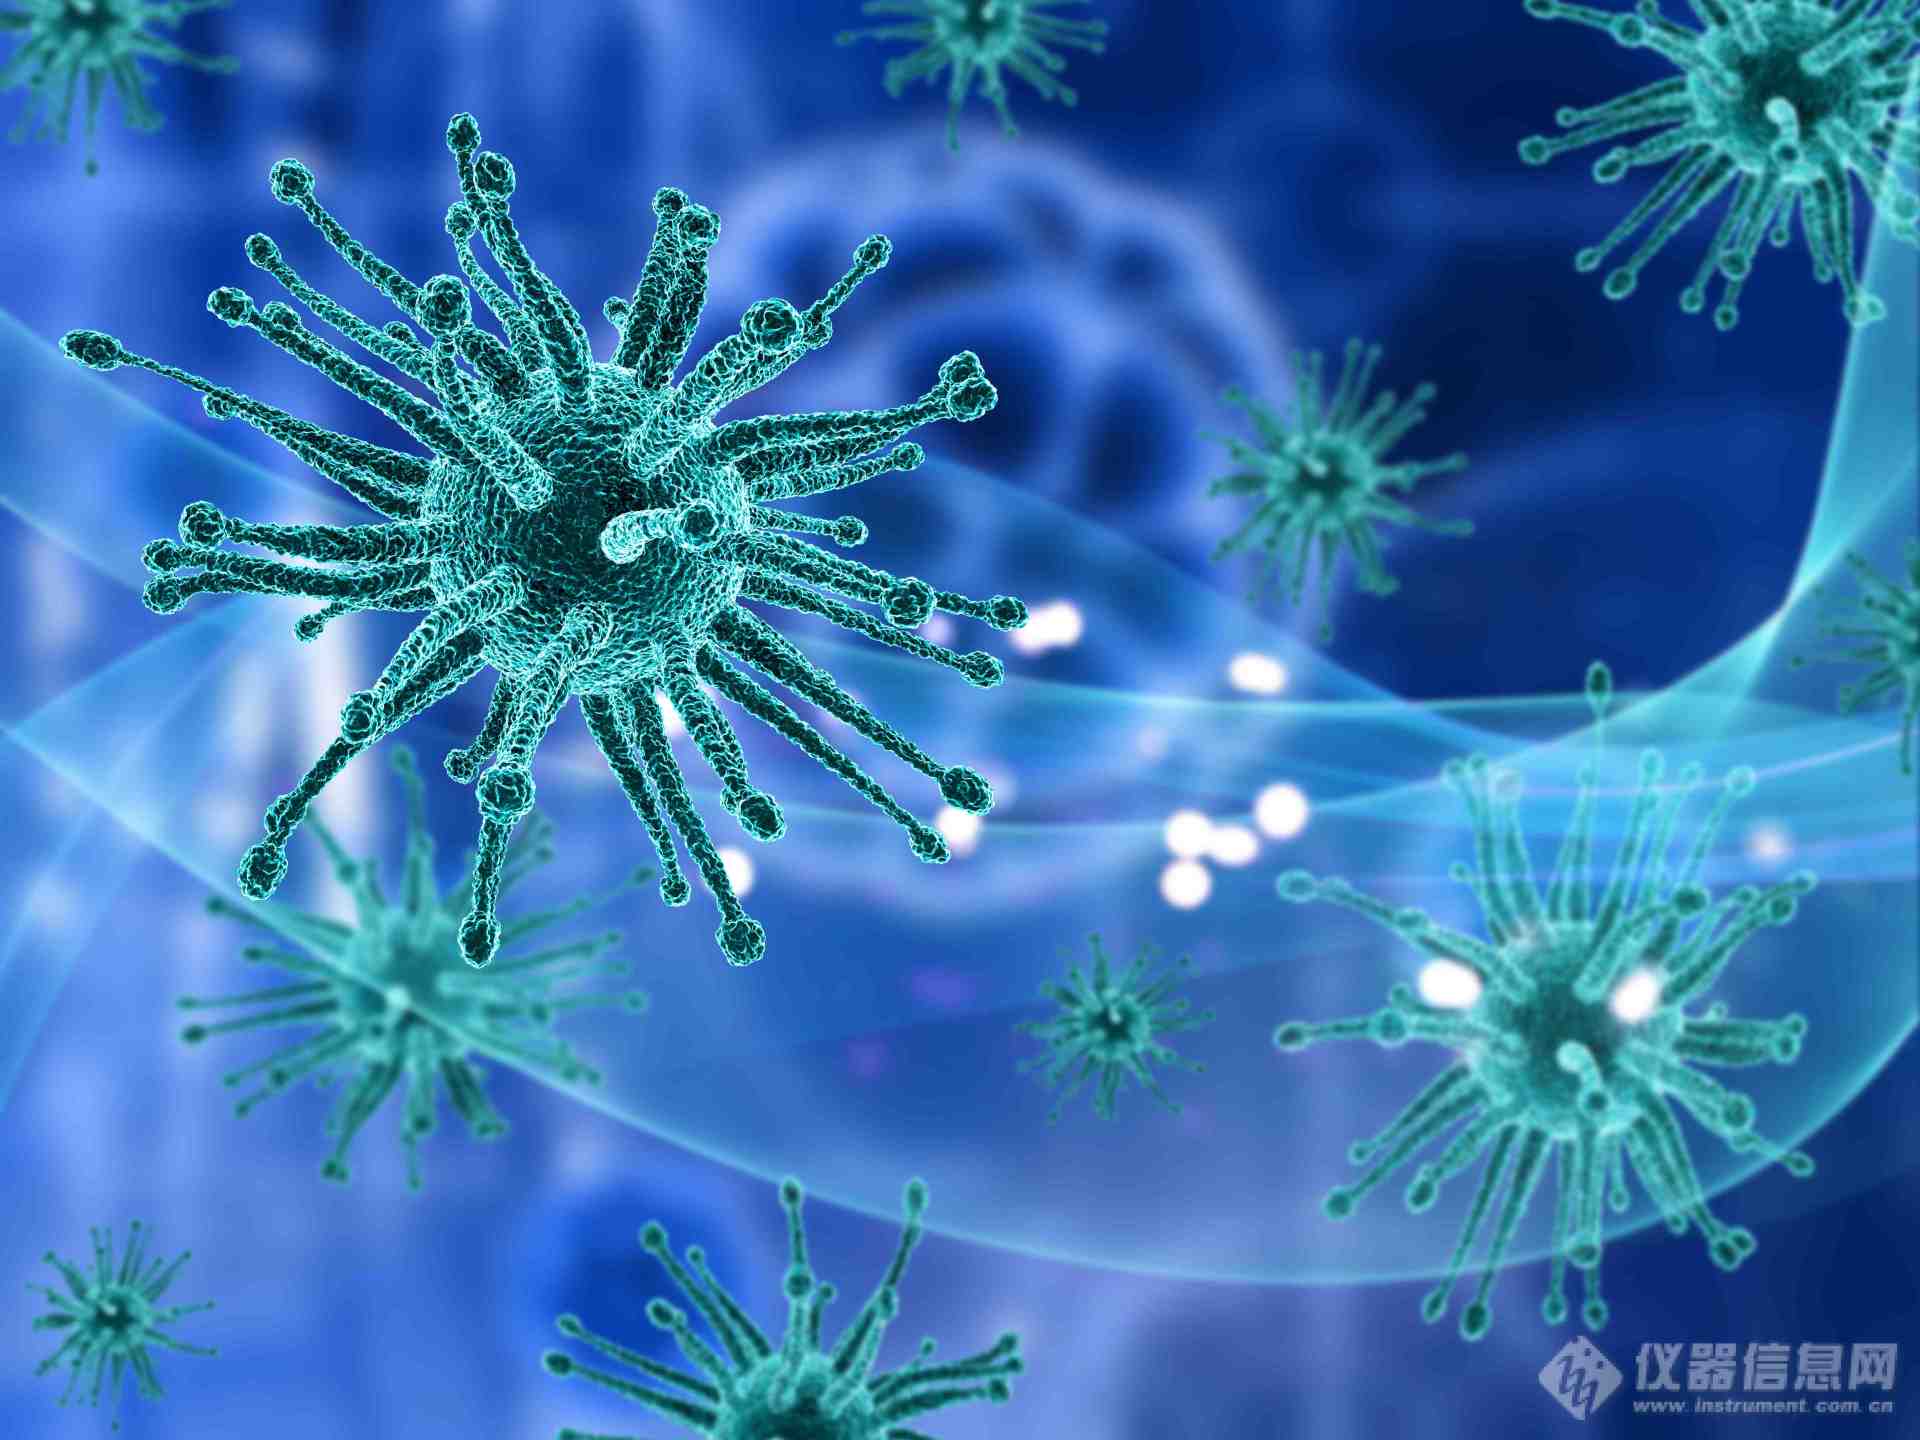 清道夫受体SR-A在天然免疫中的作用及其机制探讨